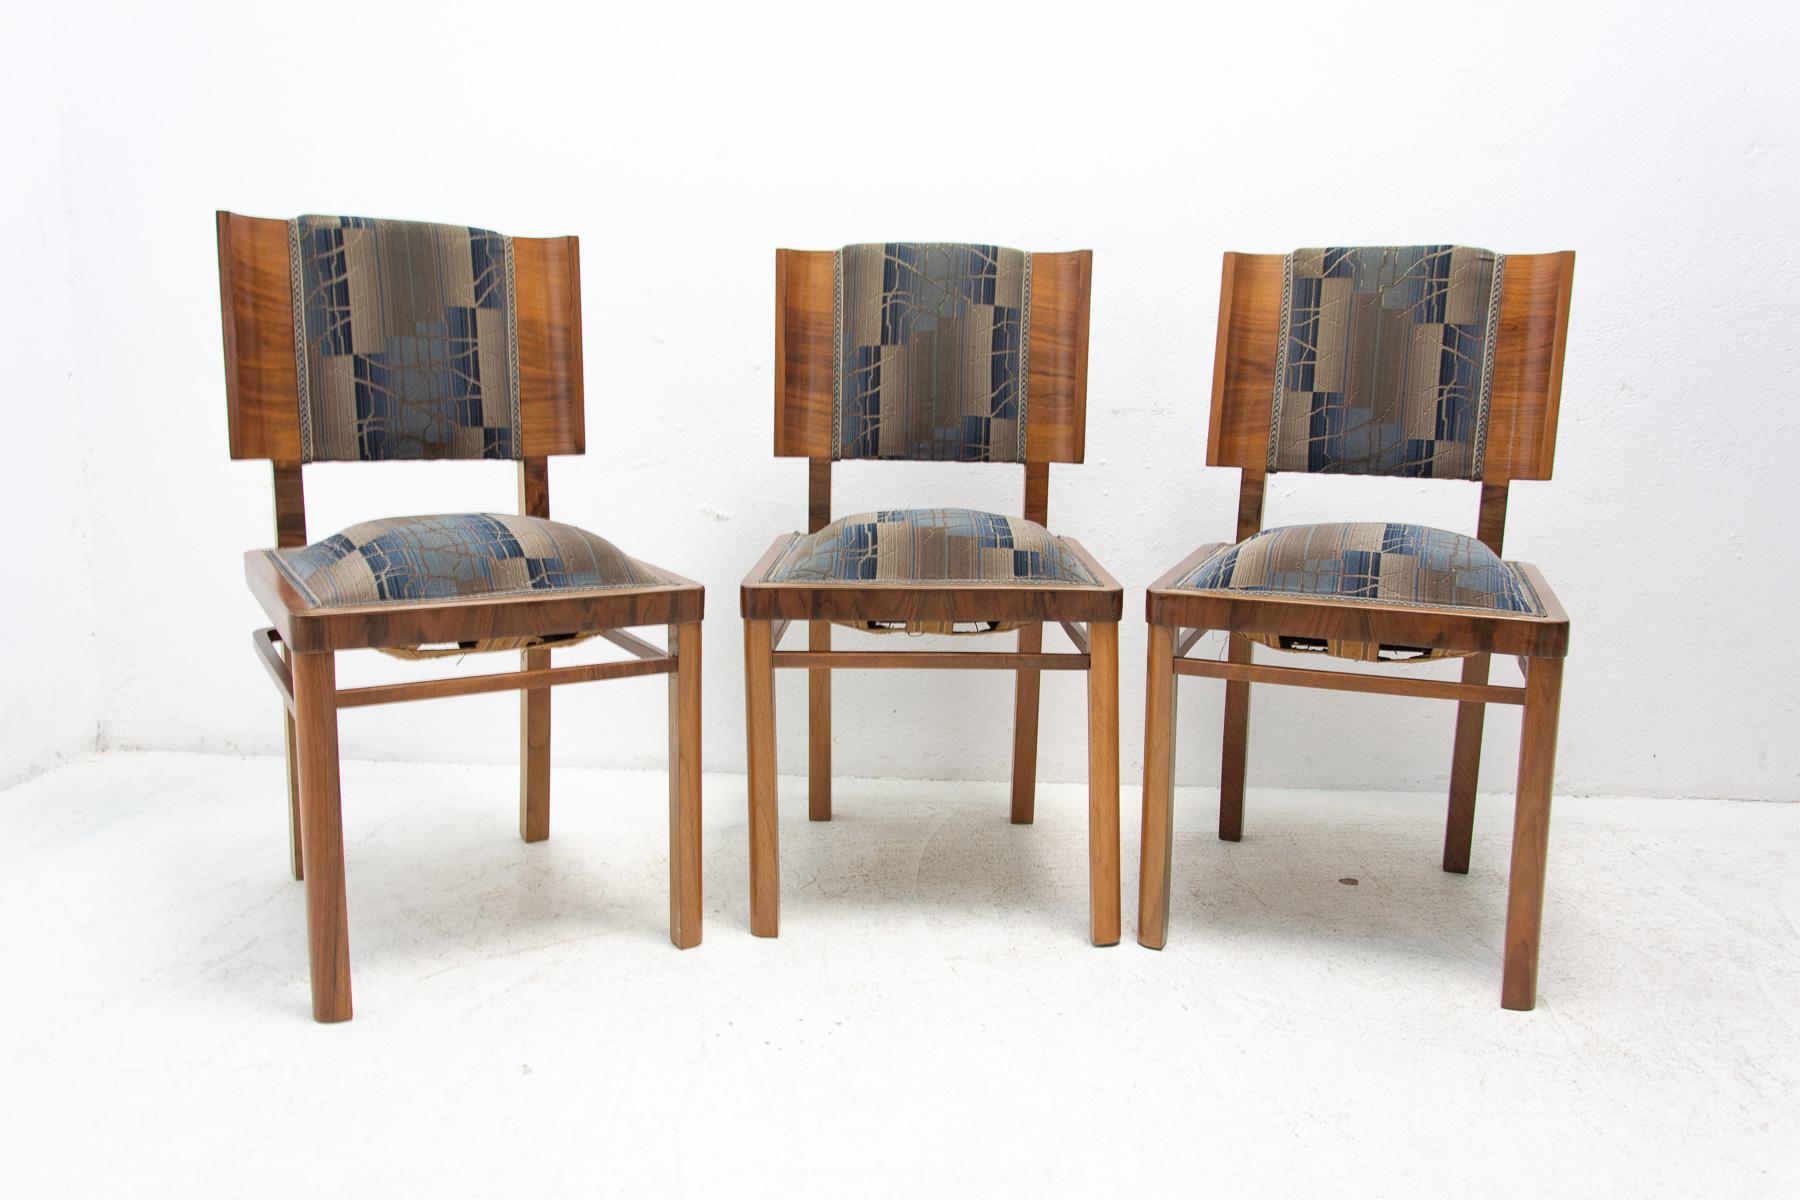 ART DECO-Stühle, hergestellt in den 1930er Jahren in der ehemaligen Tschechoslowakei. Hergestellt aus Nussbaumholz, furniert. Das Furnier ist in ausgezeichnetem Zustand. Die Sitze sind altersbedingt leicht erhöht, aber sie sind bequem. Bei einem